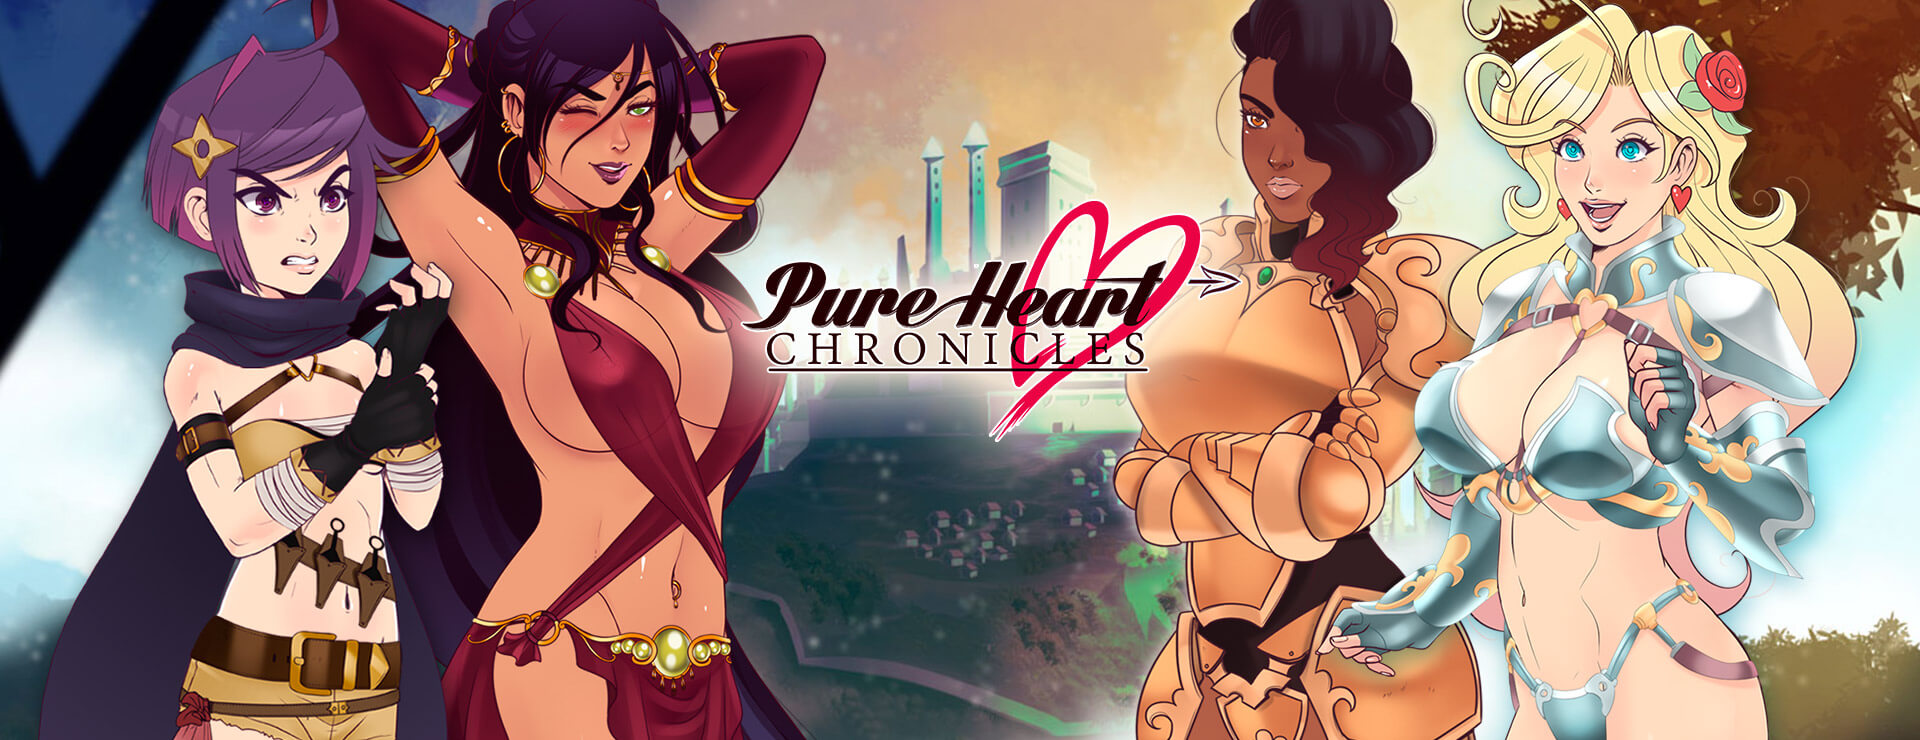 Pure Heart Chronicles - Roman Visuel Jeu